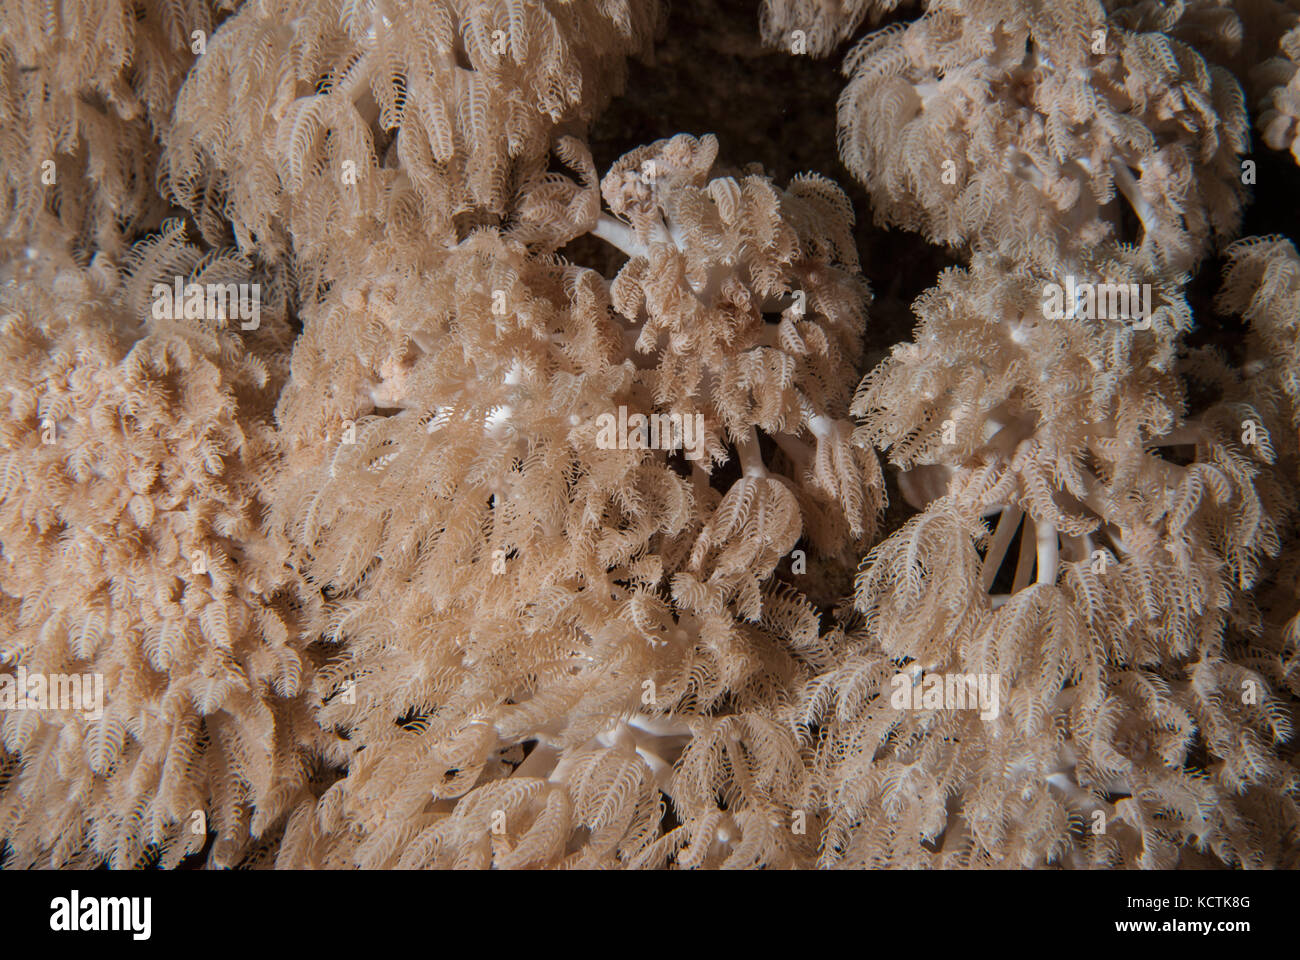 Anthelia sp.,,, Alcyonacea Xeriidae Octocorallia, coral blando, Sharm el- Sheikh, Mar Rojo, Egipto Foto de stock